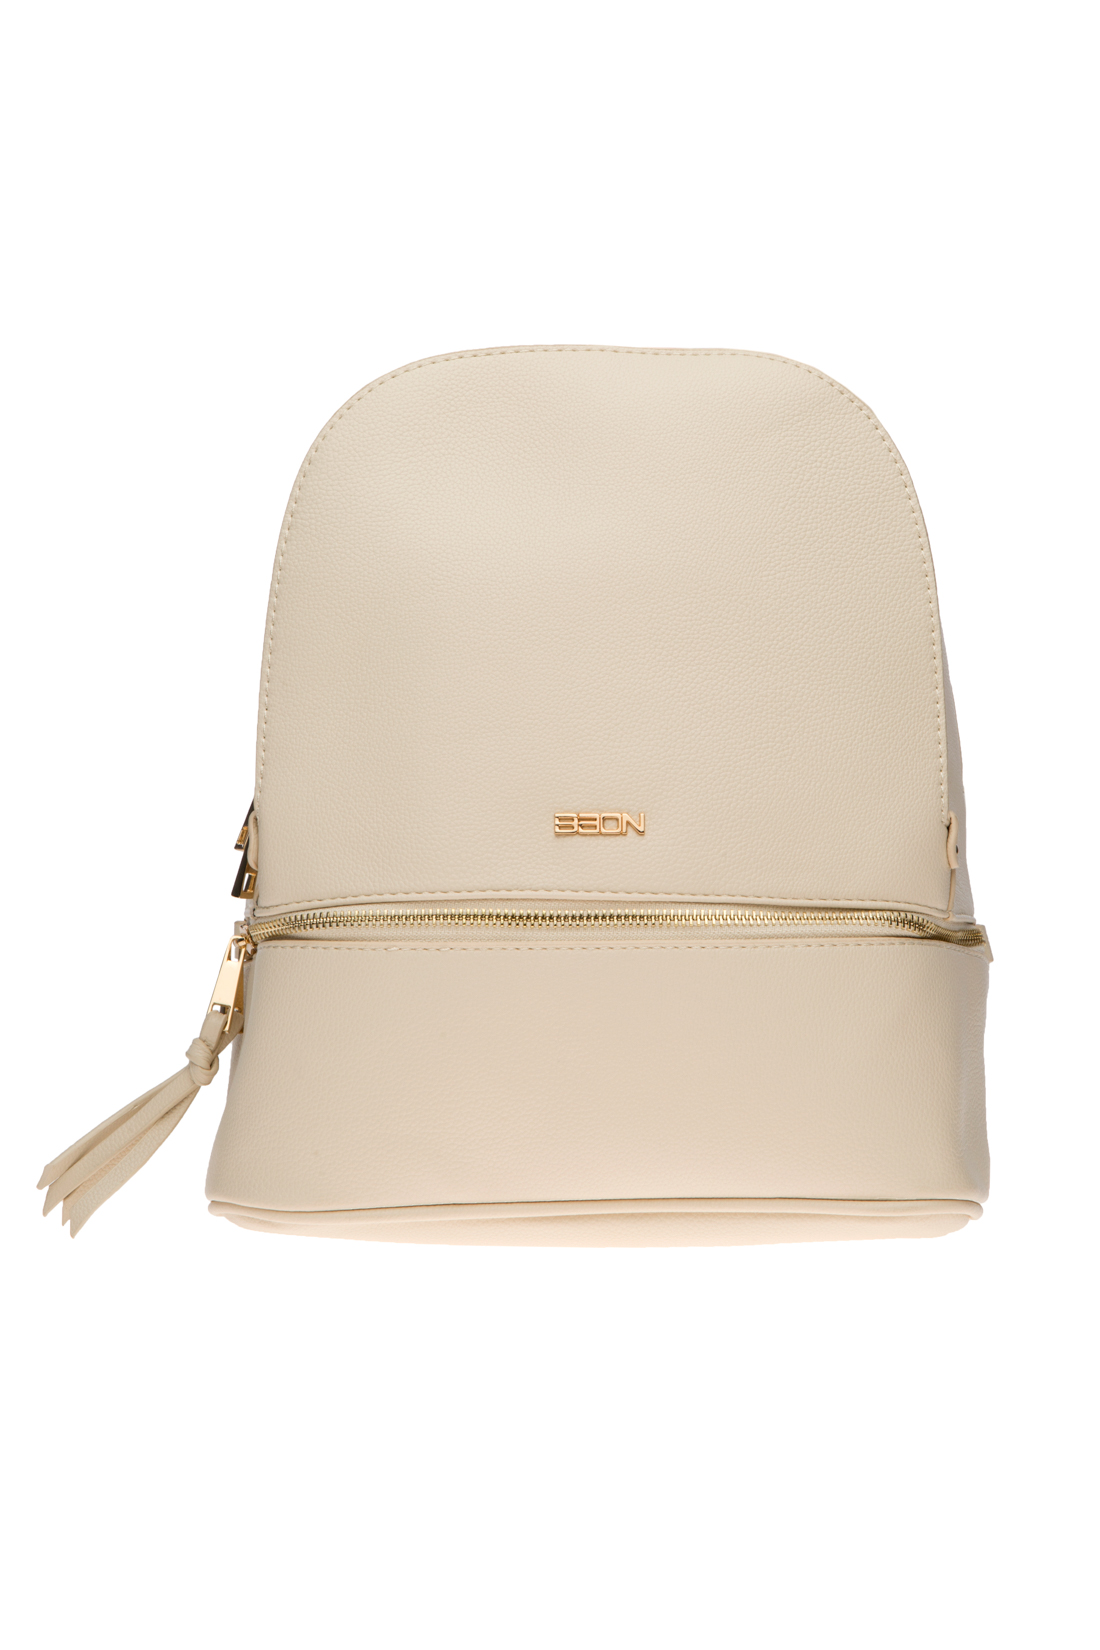 Рюкзак на молнии (арт. baon B377009), размер Без/раз, цвет бежевый Рюкзак на молнии (арт. baon B377009) - фото 1